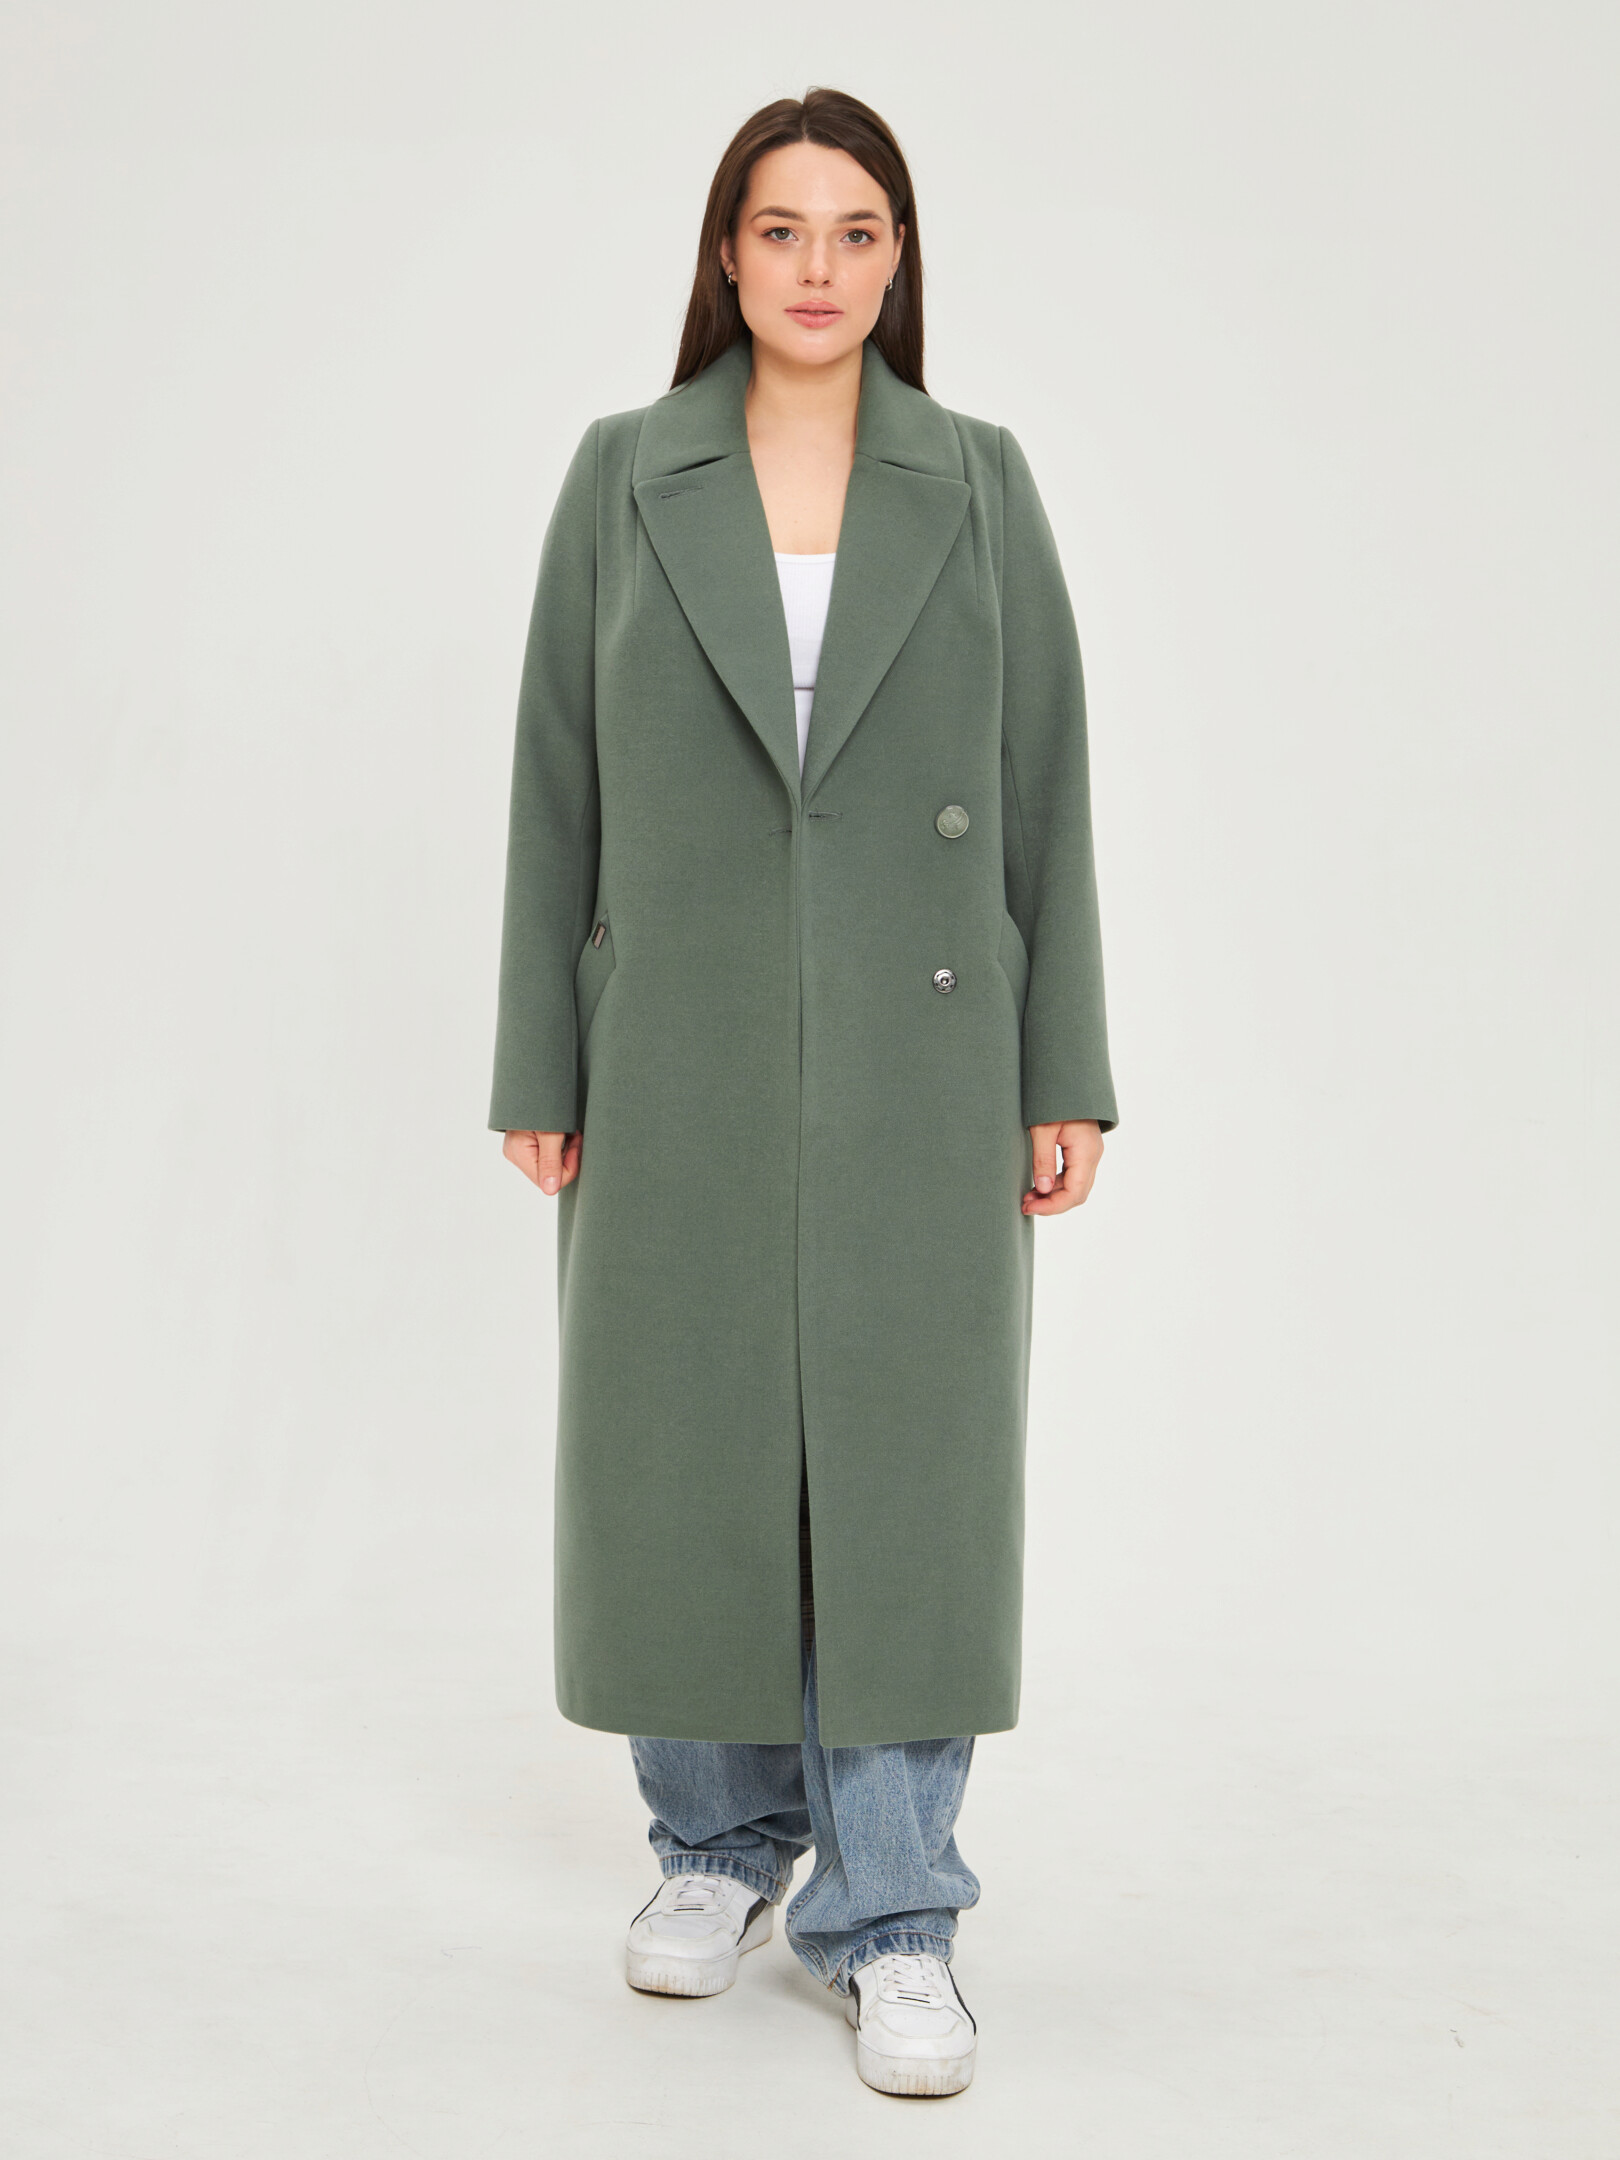 Пальто женское Каляев 66714 зеленое 50 RU